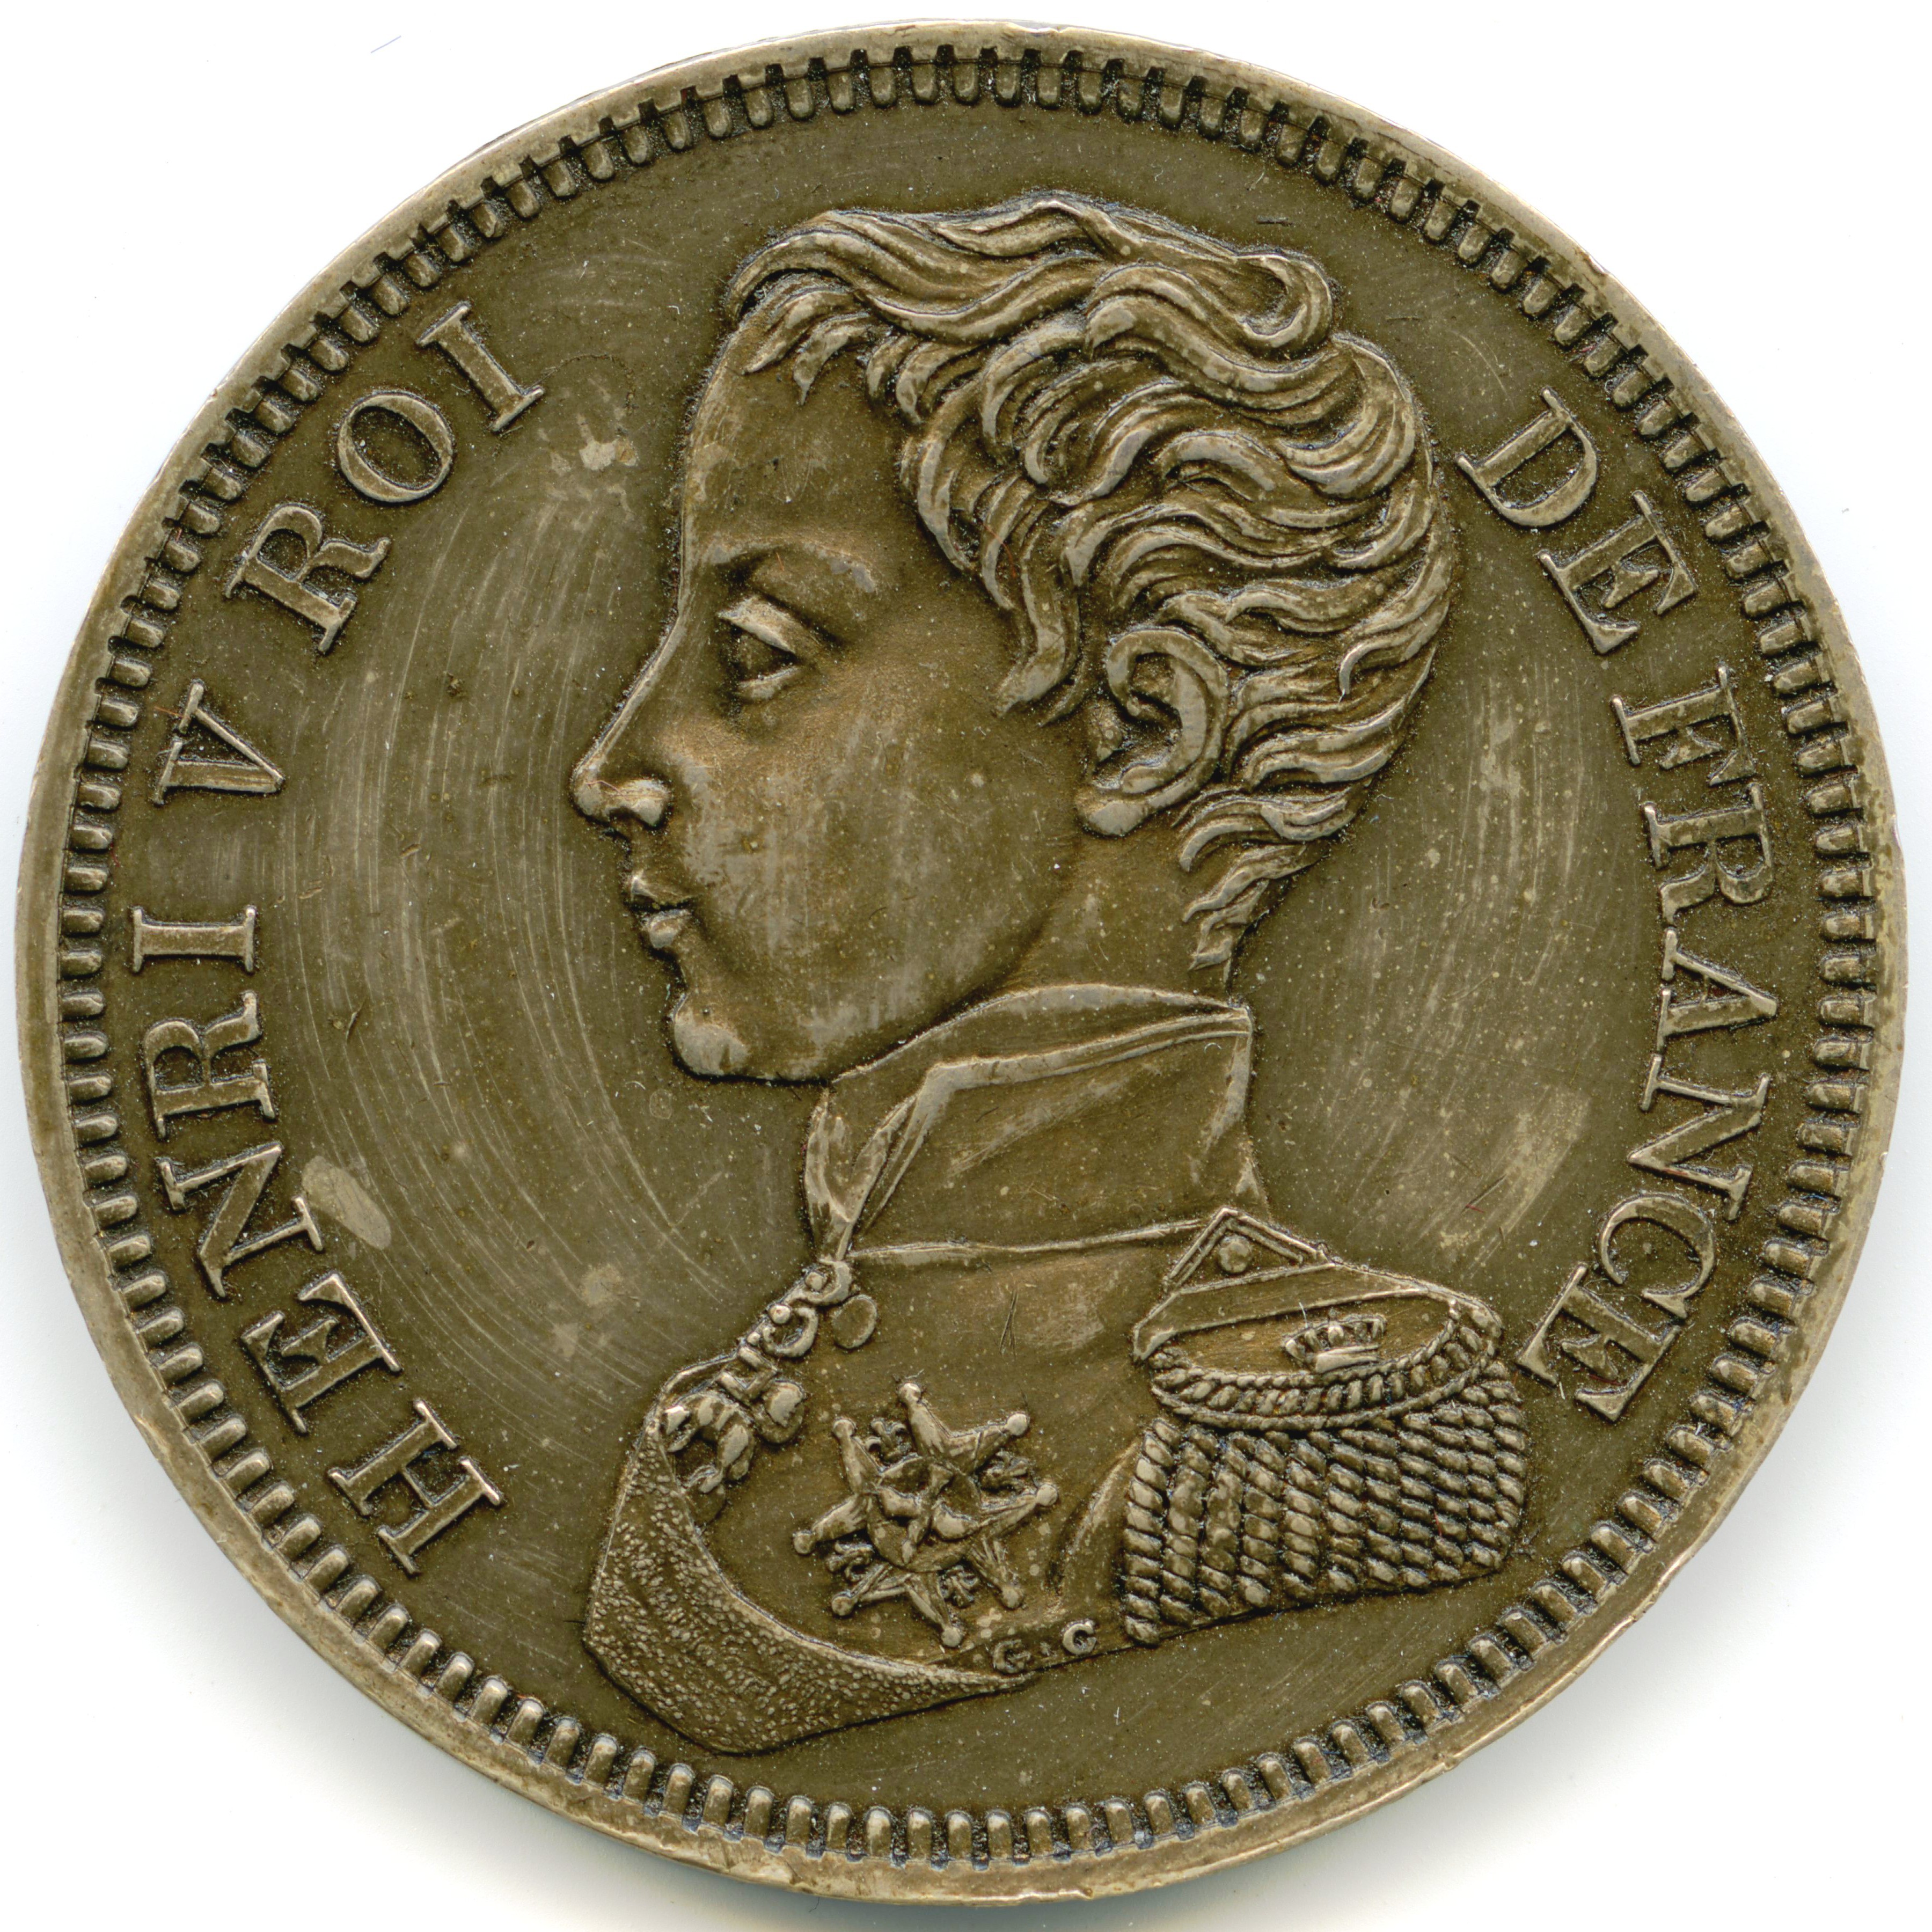 Henvi V - 5 Francs - 1831 avers